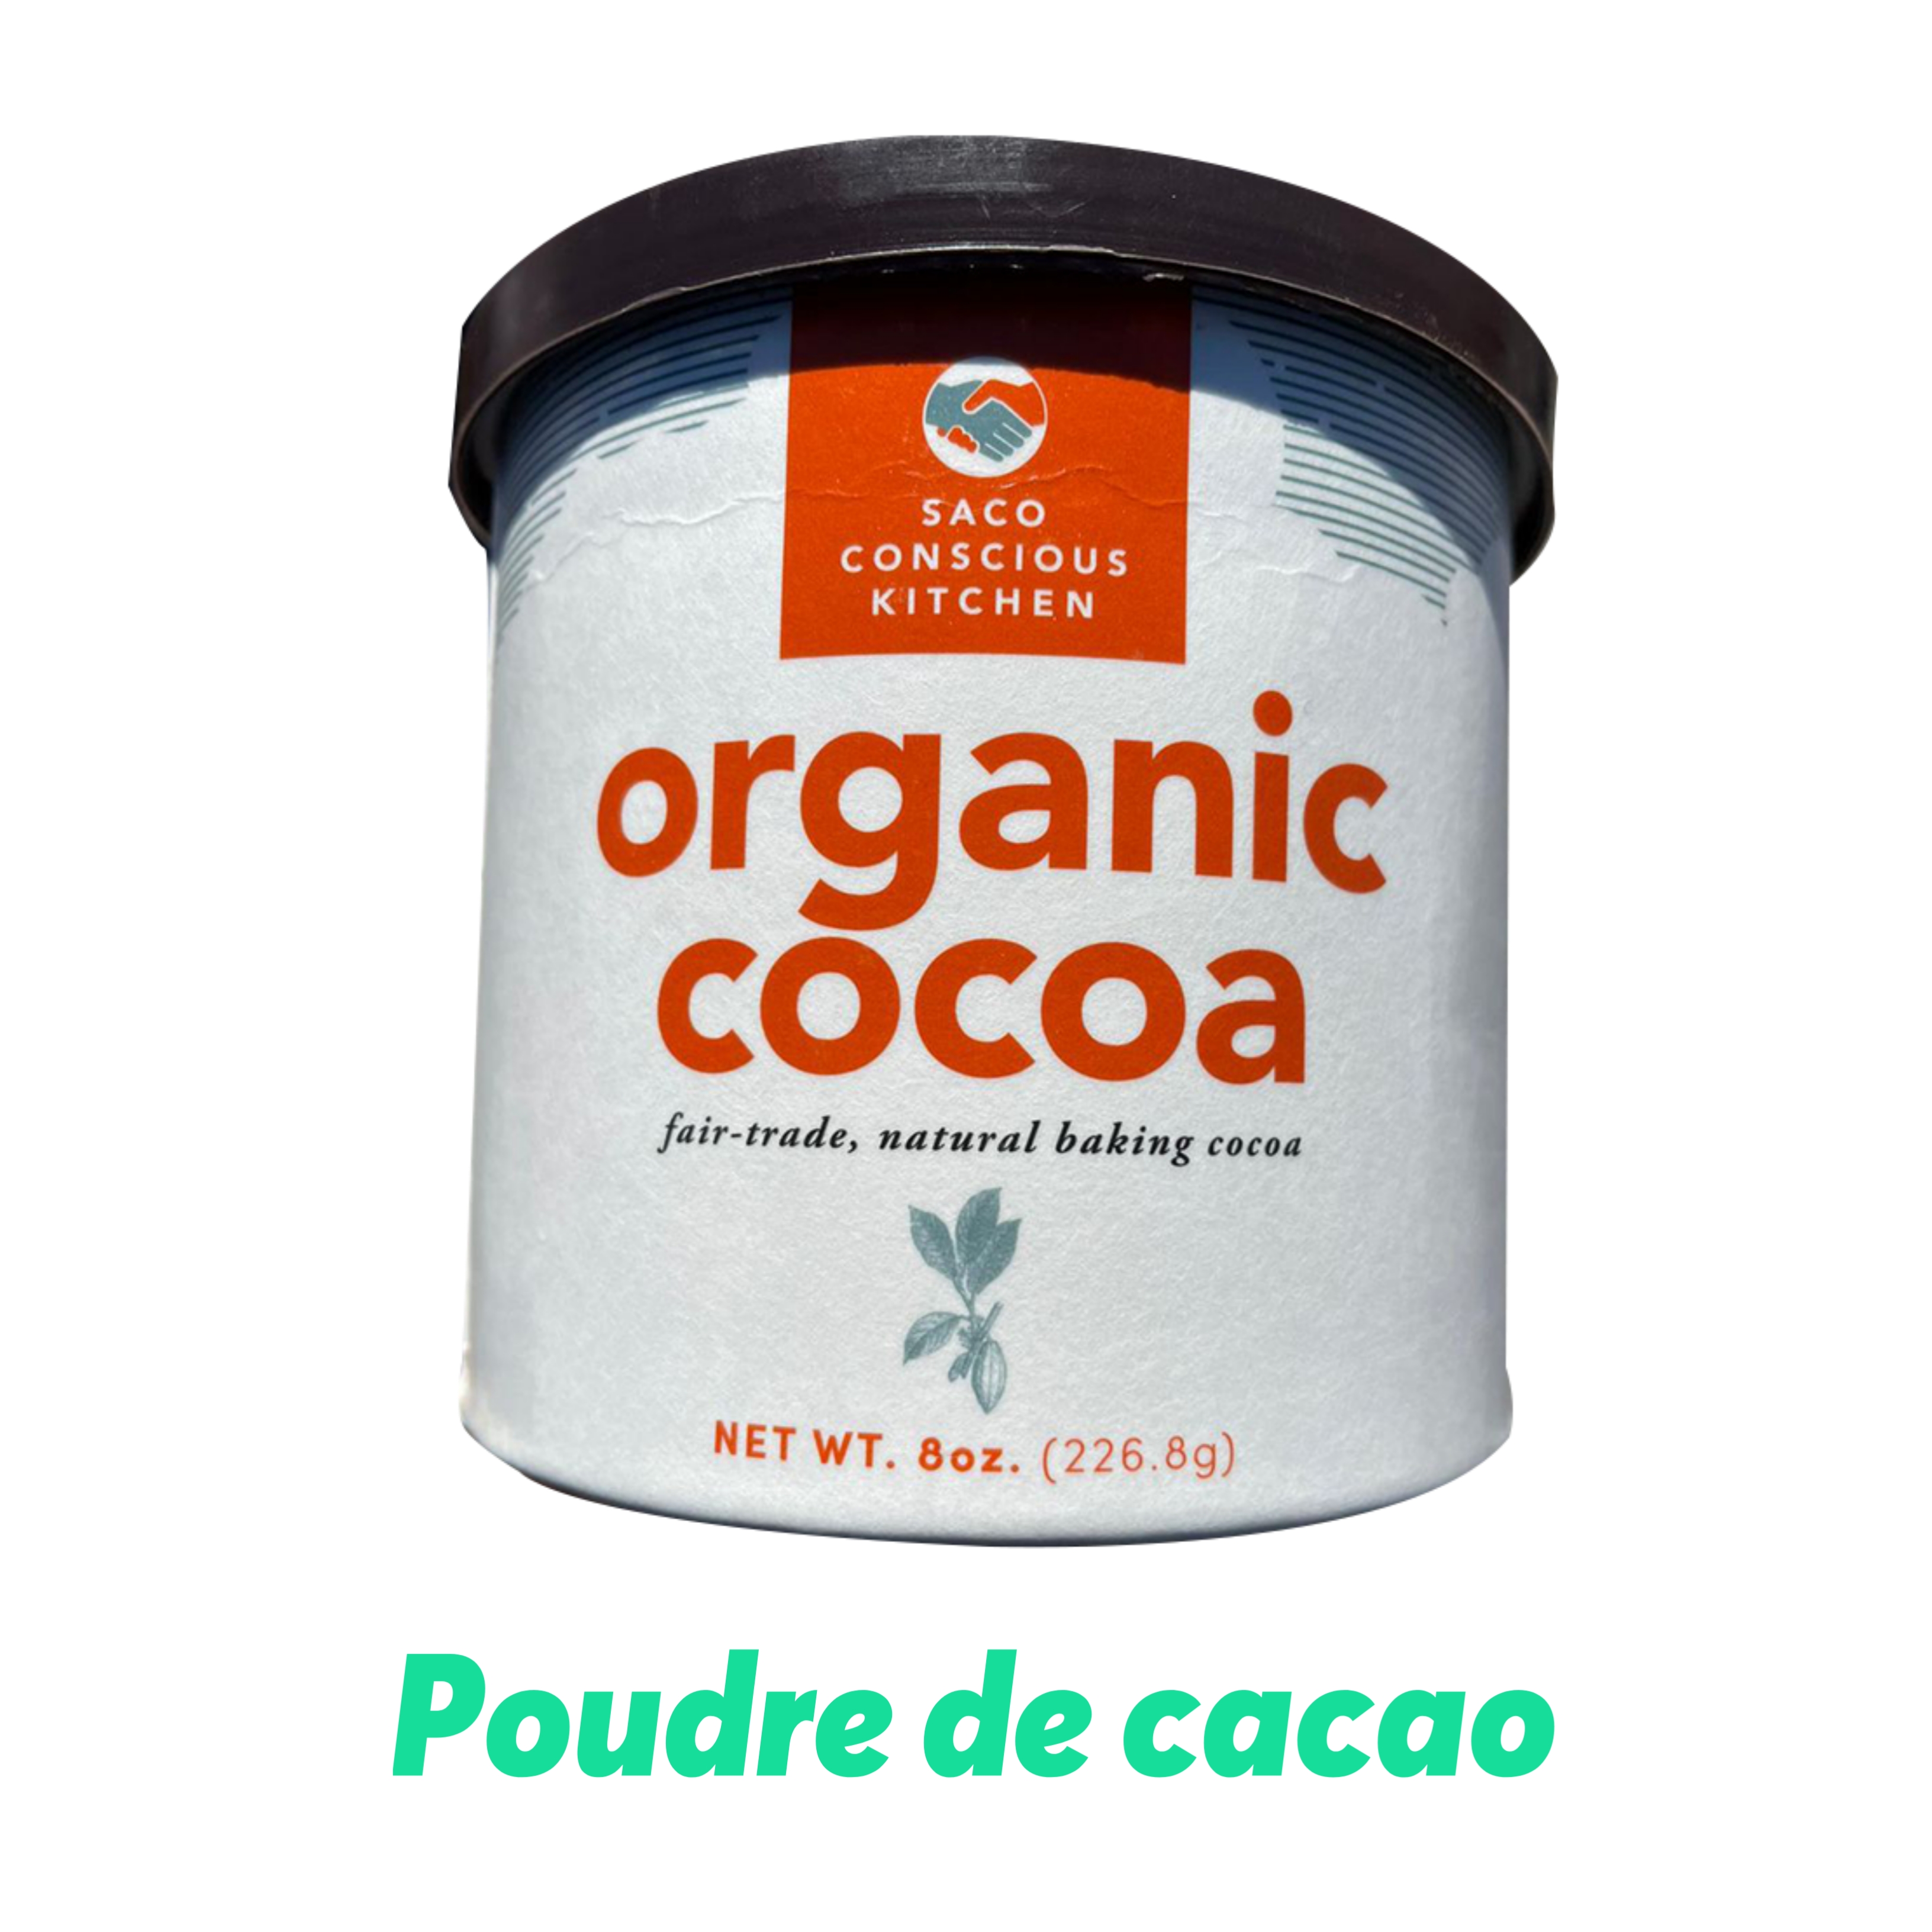 Poudre de cacao La poudre de Cacao est préparée par broyage de fèves de cacao et ne contient ni matière grasse ni sucre. Le cacao est une riche source de polyphénol, un antioxydant qui peut abaisser la tension artérielle, améliorer le taux de cholestérol et de sucre dans le sang.